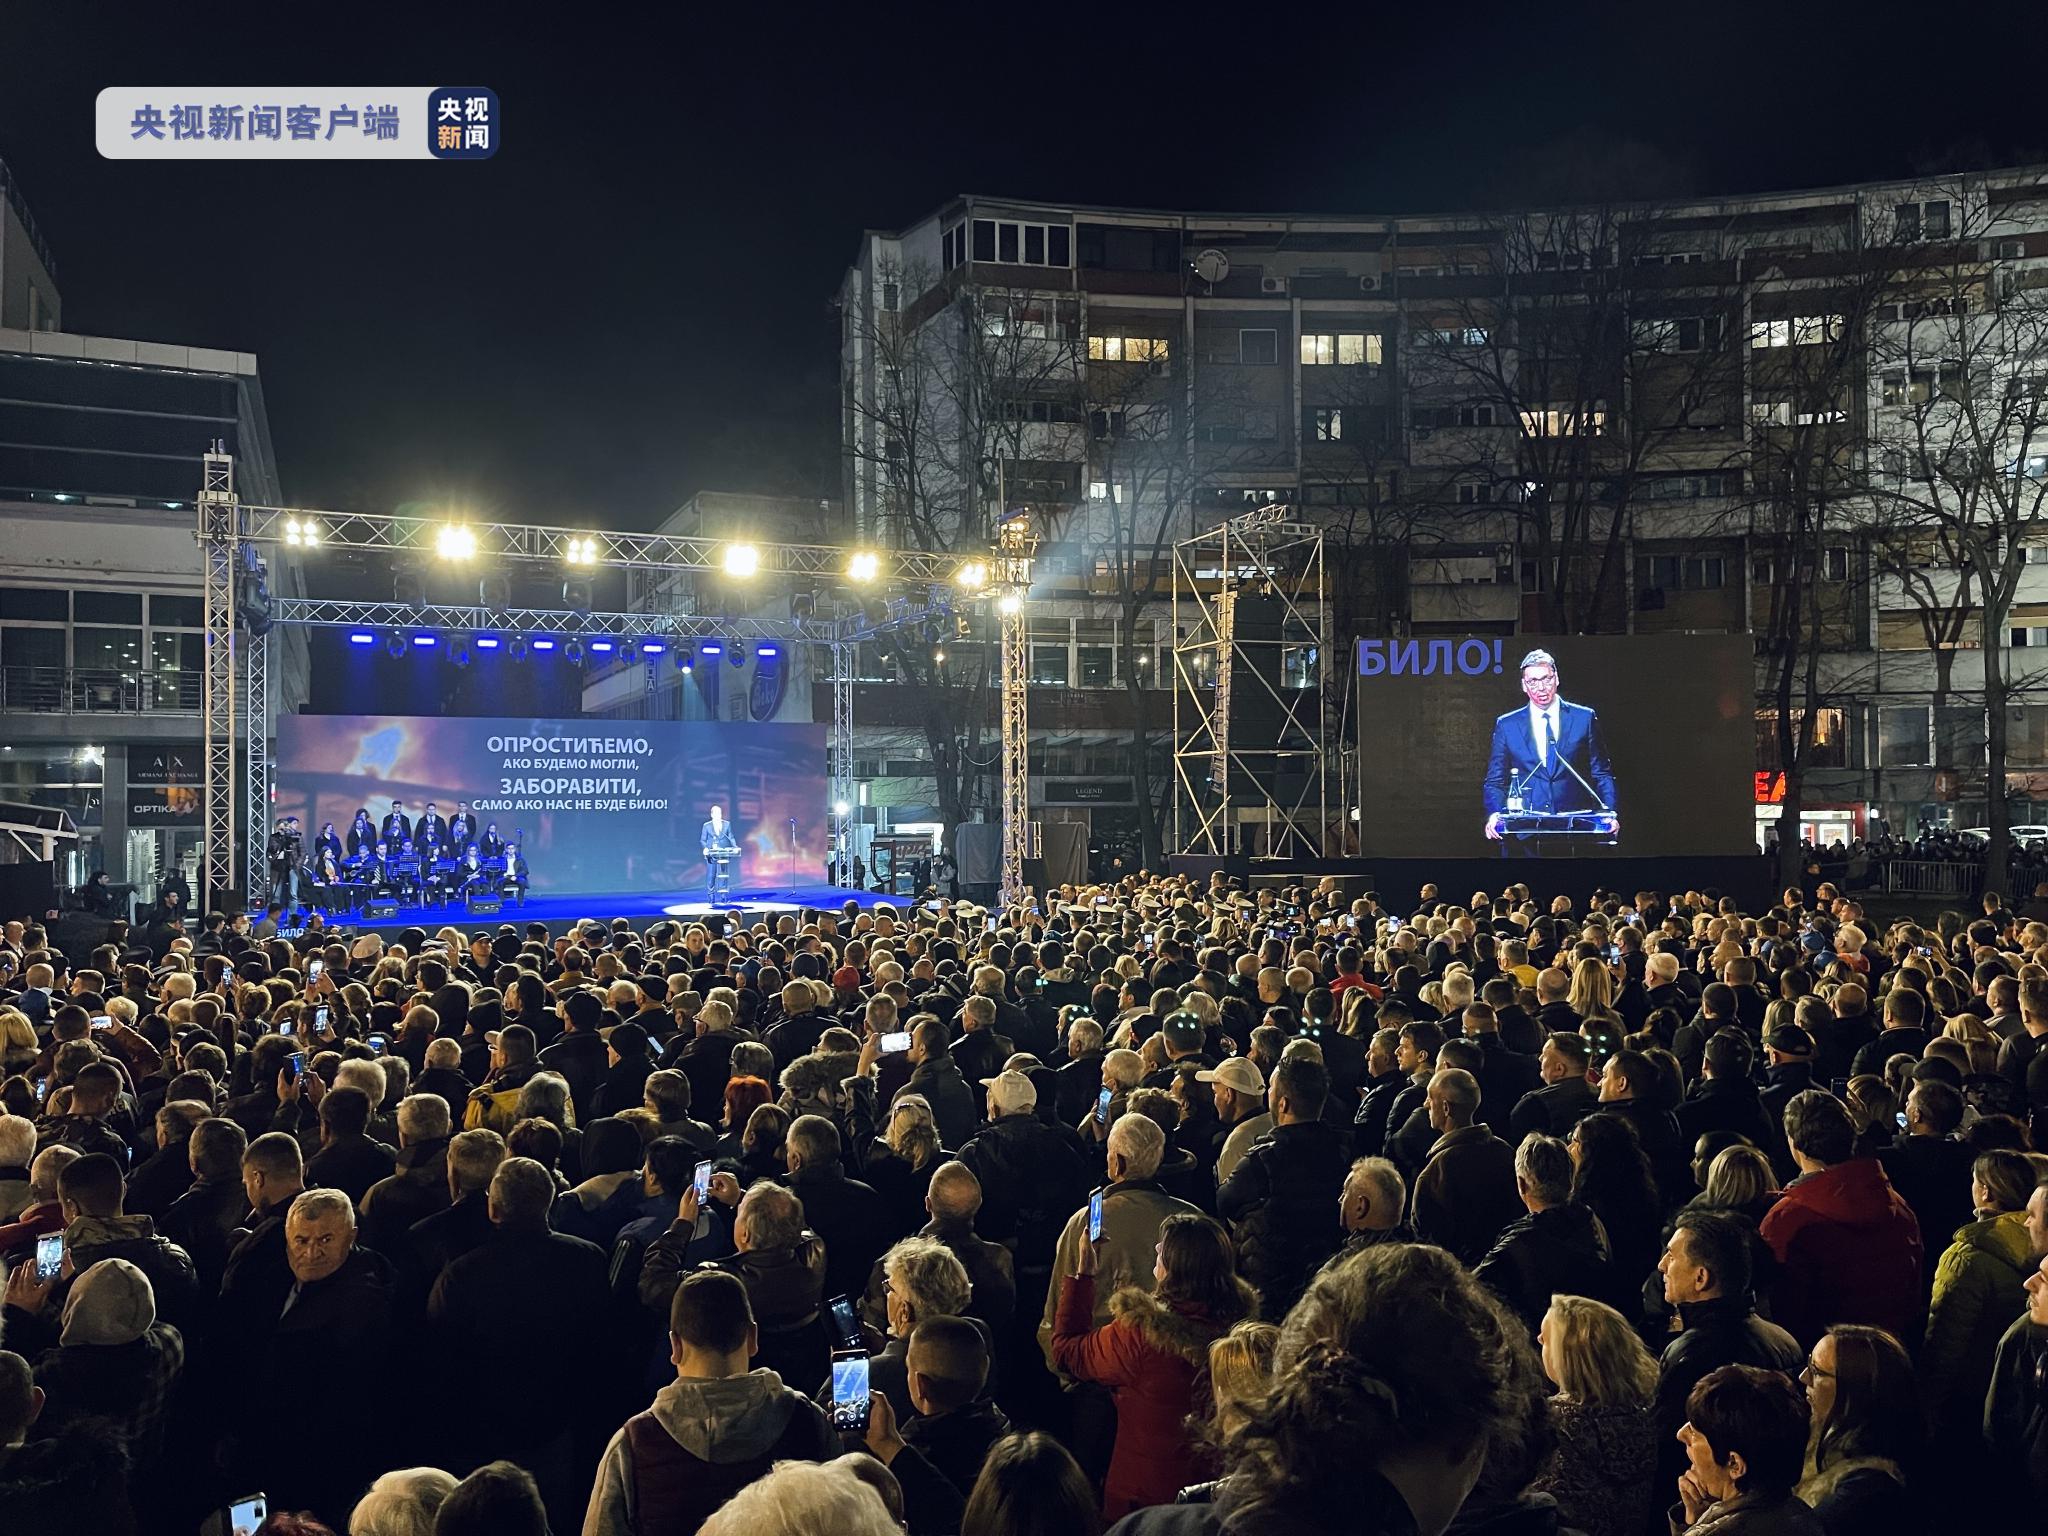 纪念活动举办地塞尔维亚战士广场聚集了众多参加悼念活动的民众